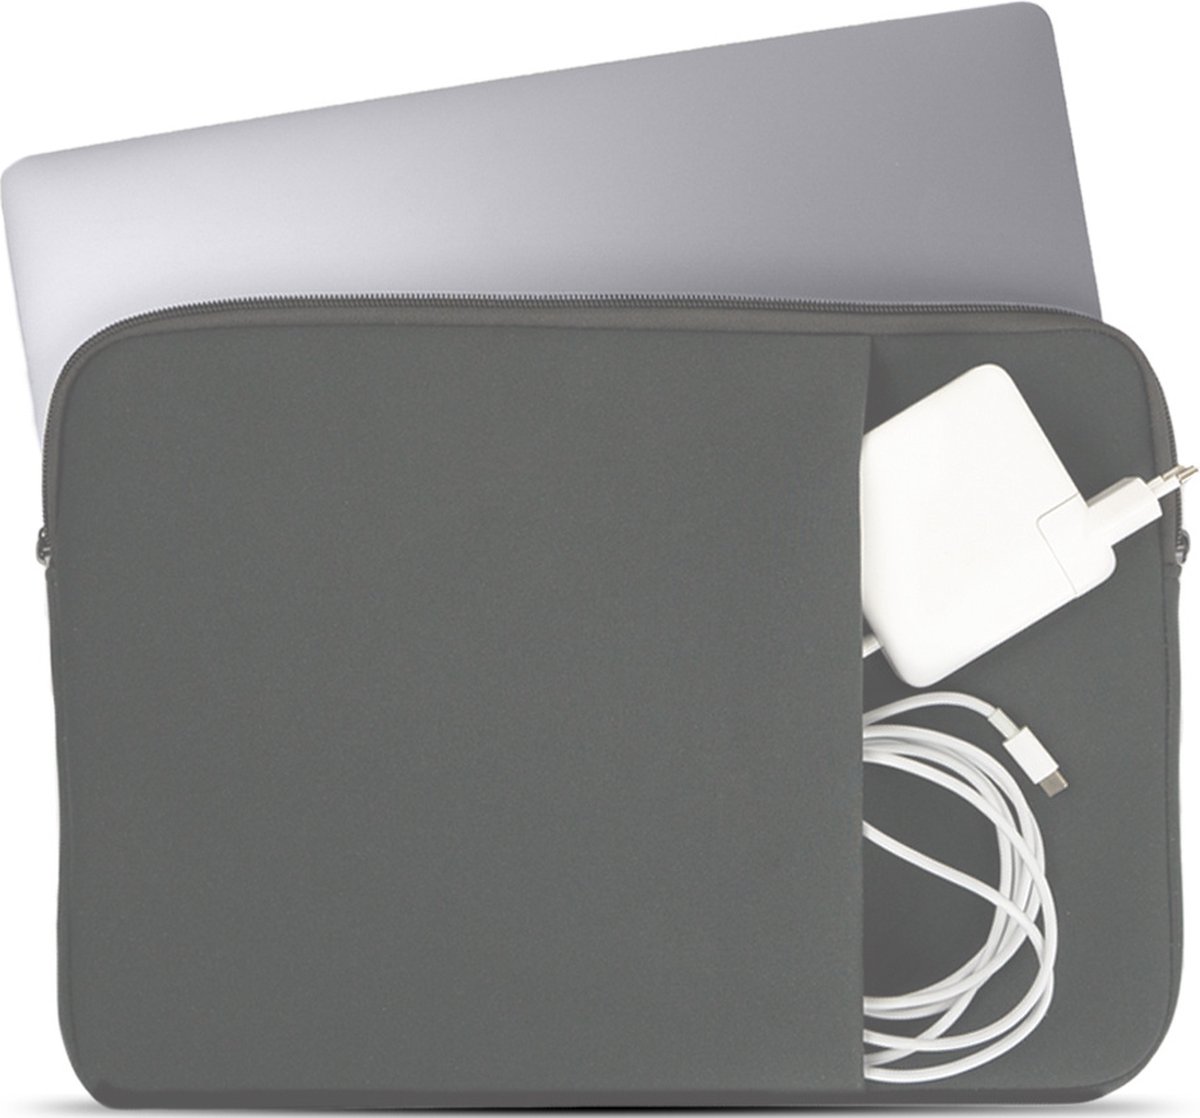 Coverzs Laptophoes 14 inch & 15 6 inch (grijs) - Laptoptas dames / heren geschikt voor o.a. 15 6 inch laptop en 14 Inch laptop - Macbook hoes met ritssluiting - waterafstotende hoes - Coverzs